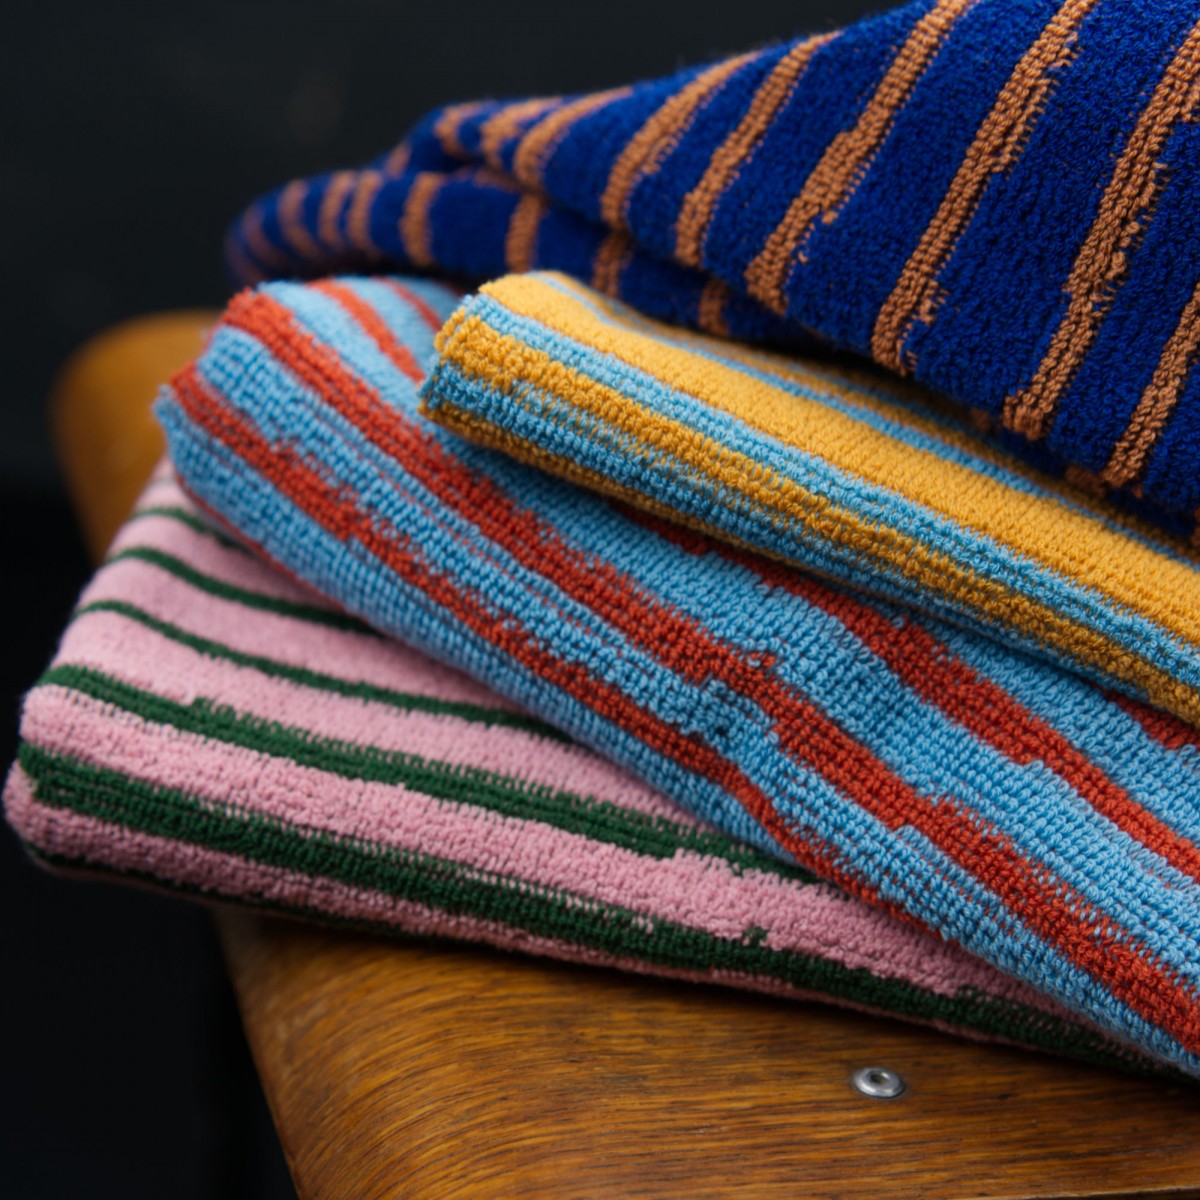 Towel.Studio | Stripe Handtuch | Azure & Chestnut